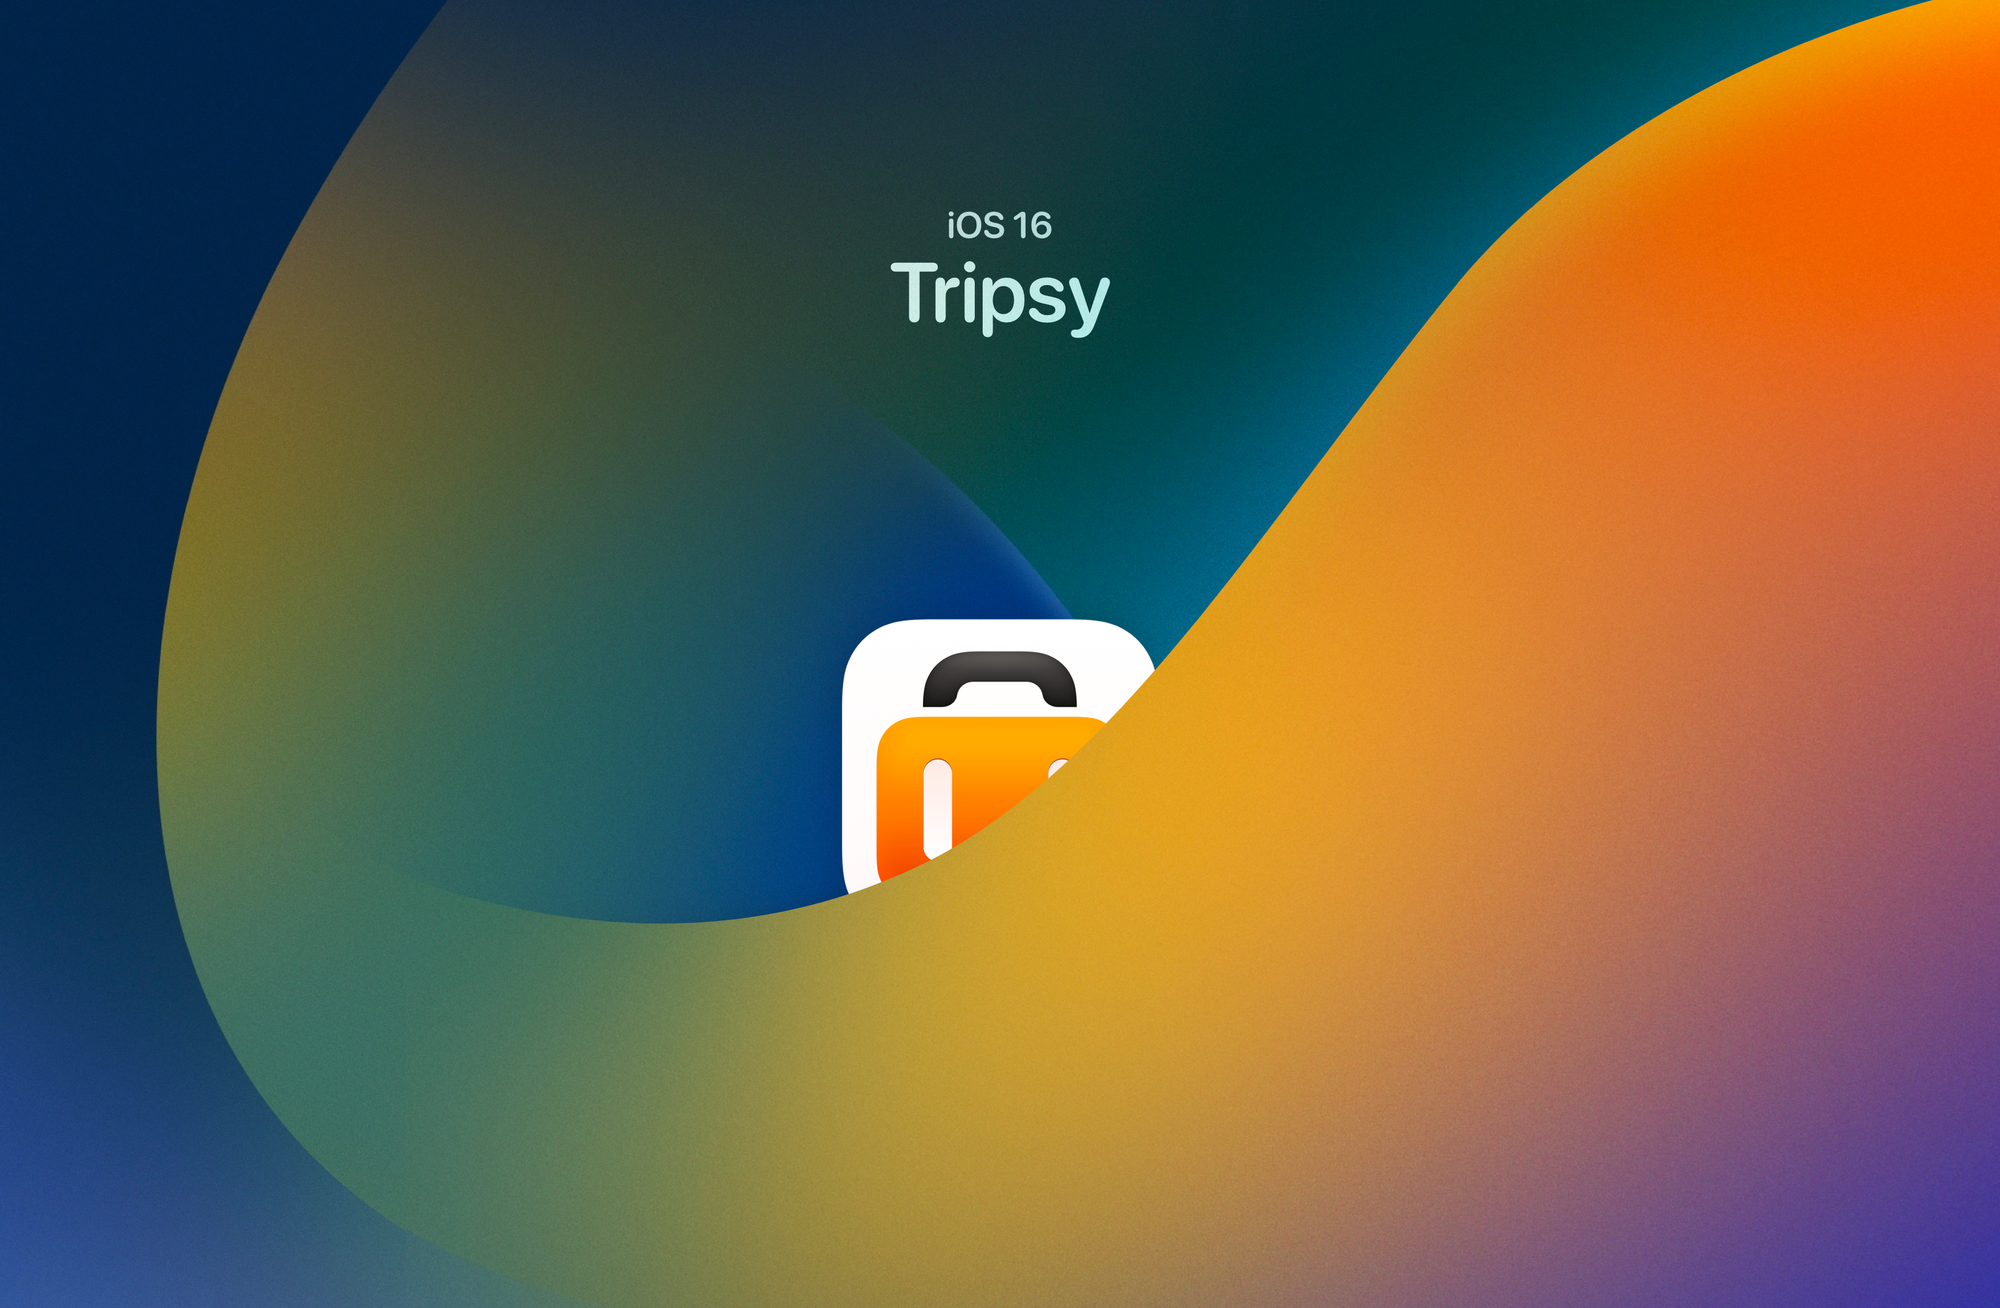 Tripsy 2.12 là một ứng dụng khóa màn hình với giao diện đẹp và chức năng nâng cao. Với phiên bản mới này, Tripsy đã thiết kế lại giao diện và cải thiện tính năng, cung cấp cho người dùng những trải nghiệm khóa màn hình tuyệt vời hơn bao giờ hết!